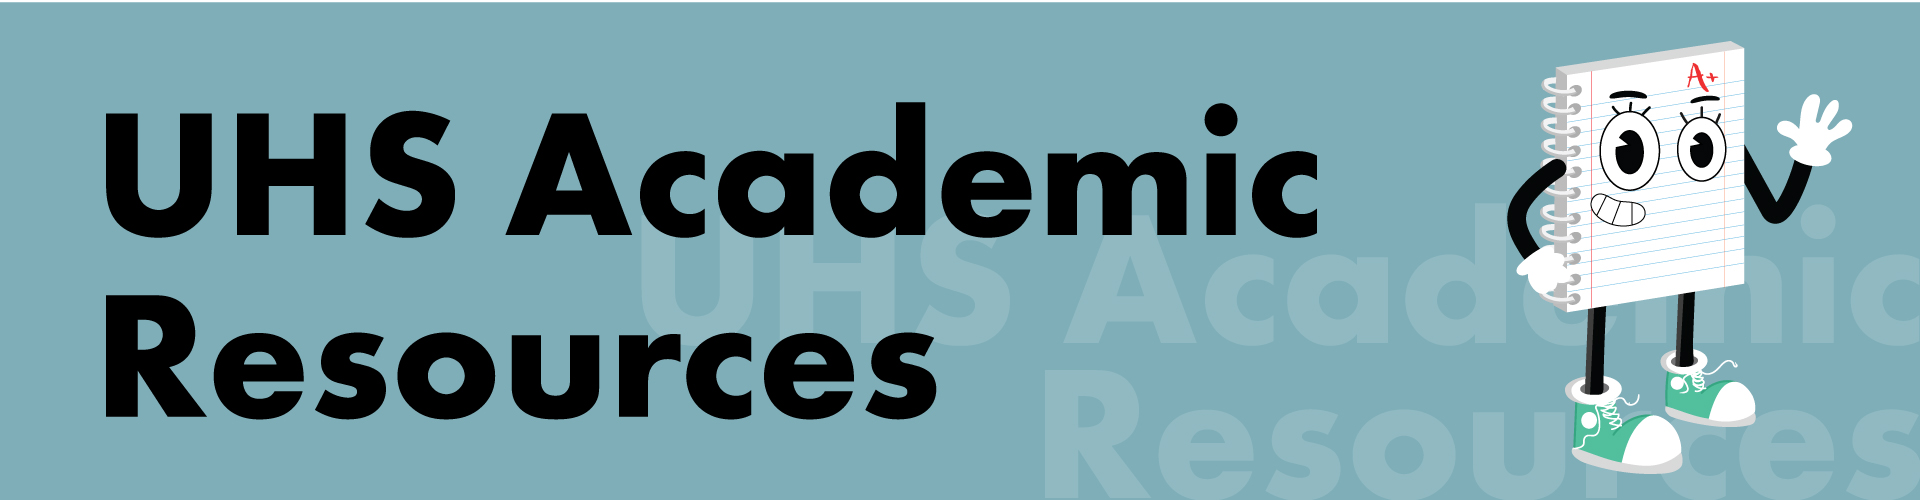 UHS Academic Resources